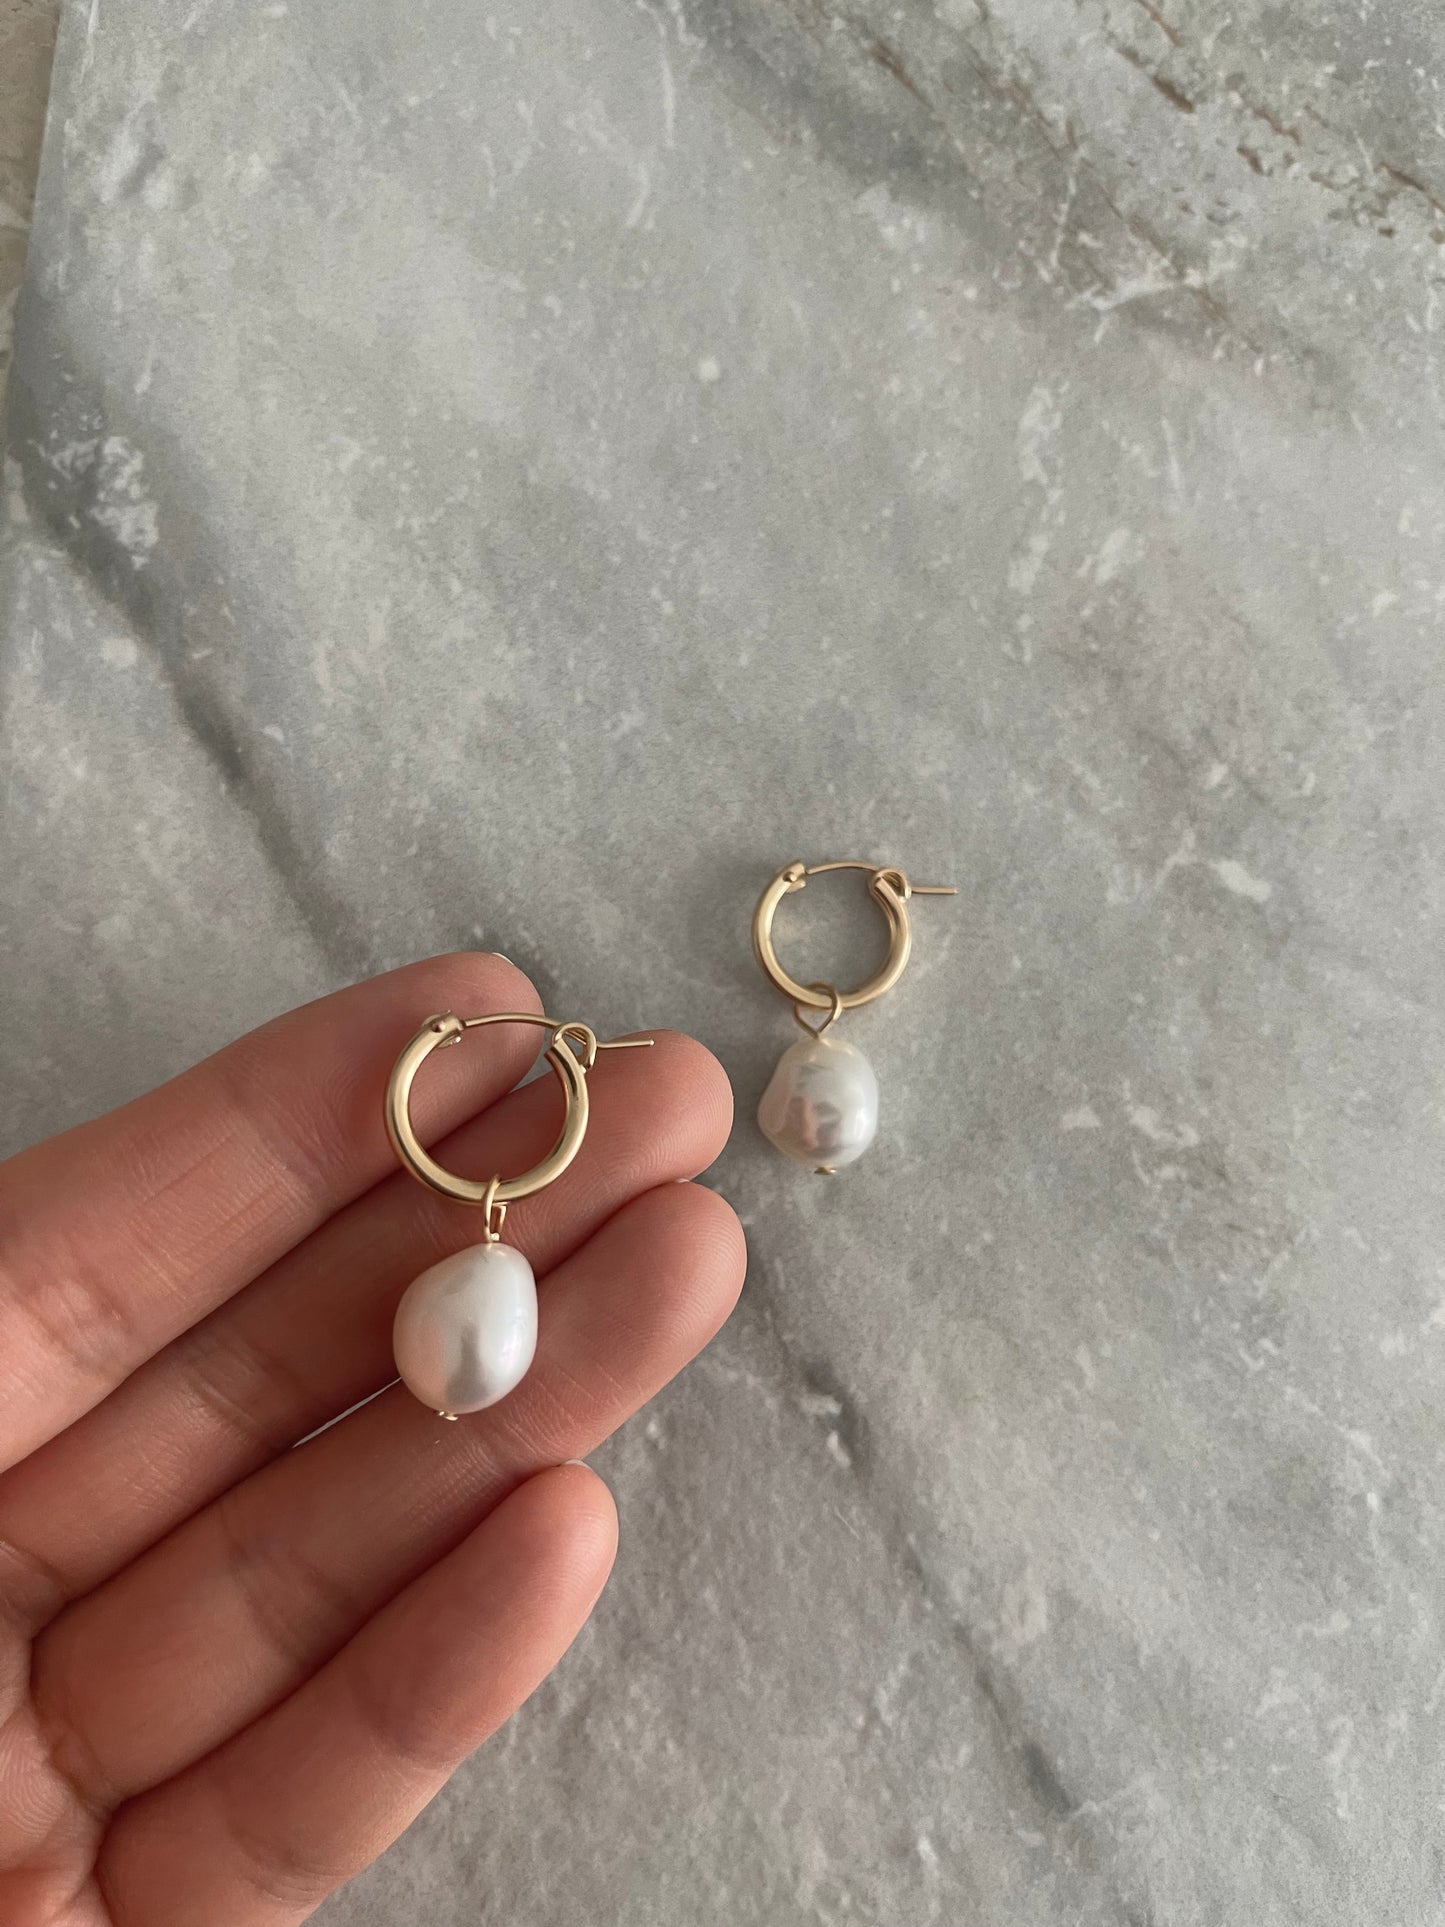 Large pearl earrings